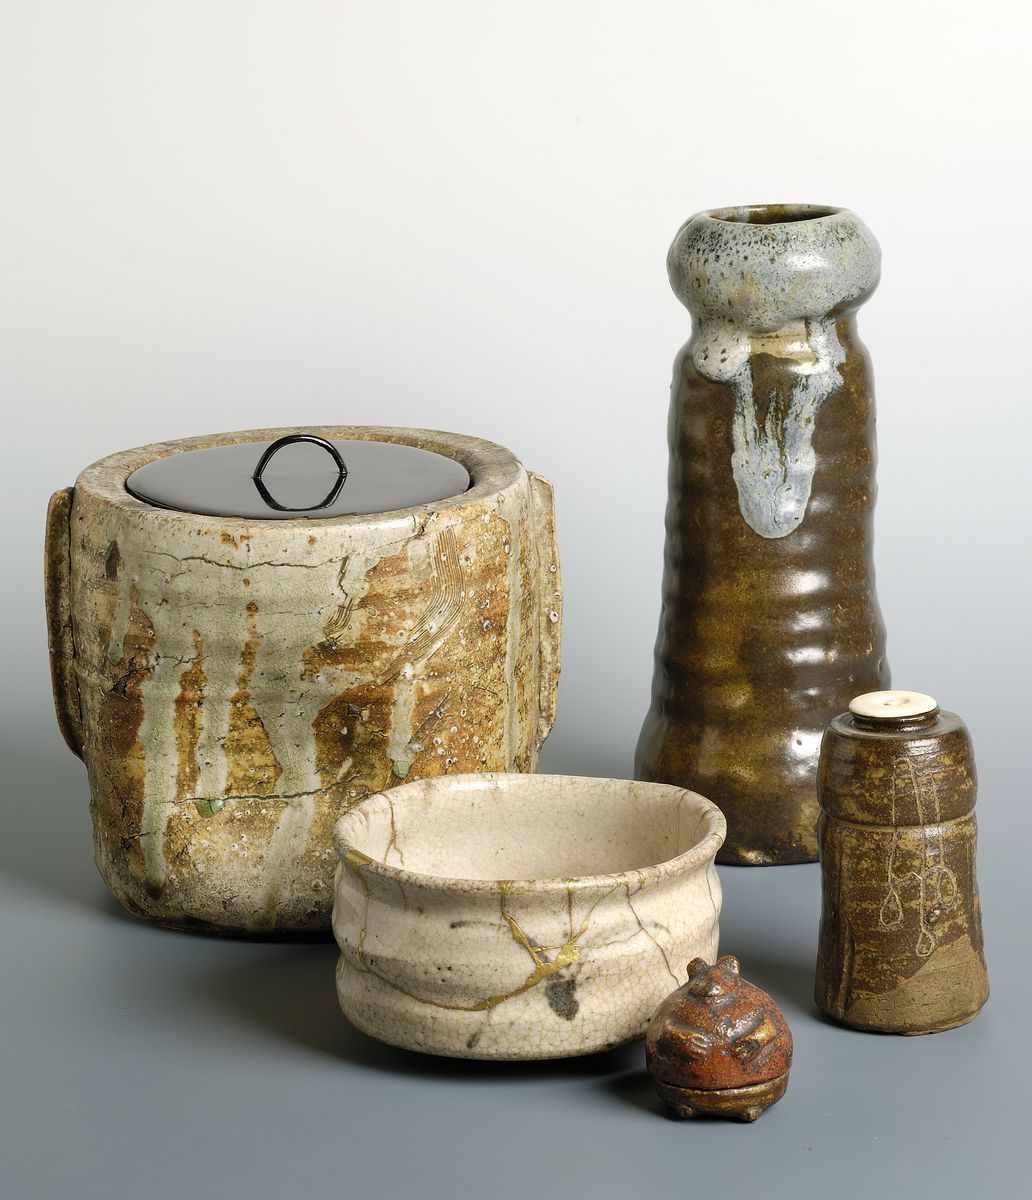 Photographie d'un ensemble de vases et objets en grès.